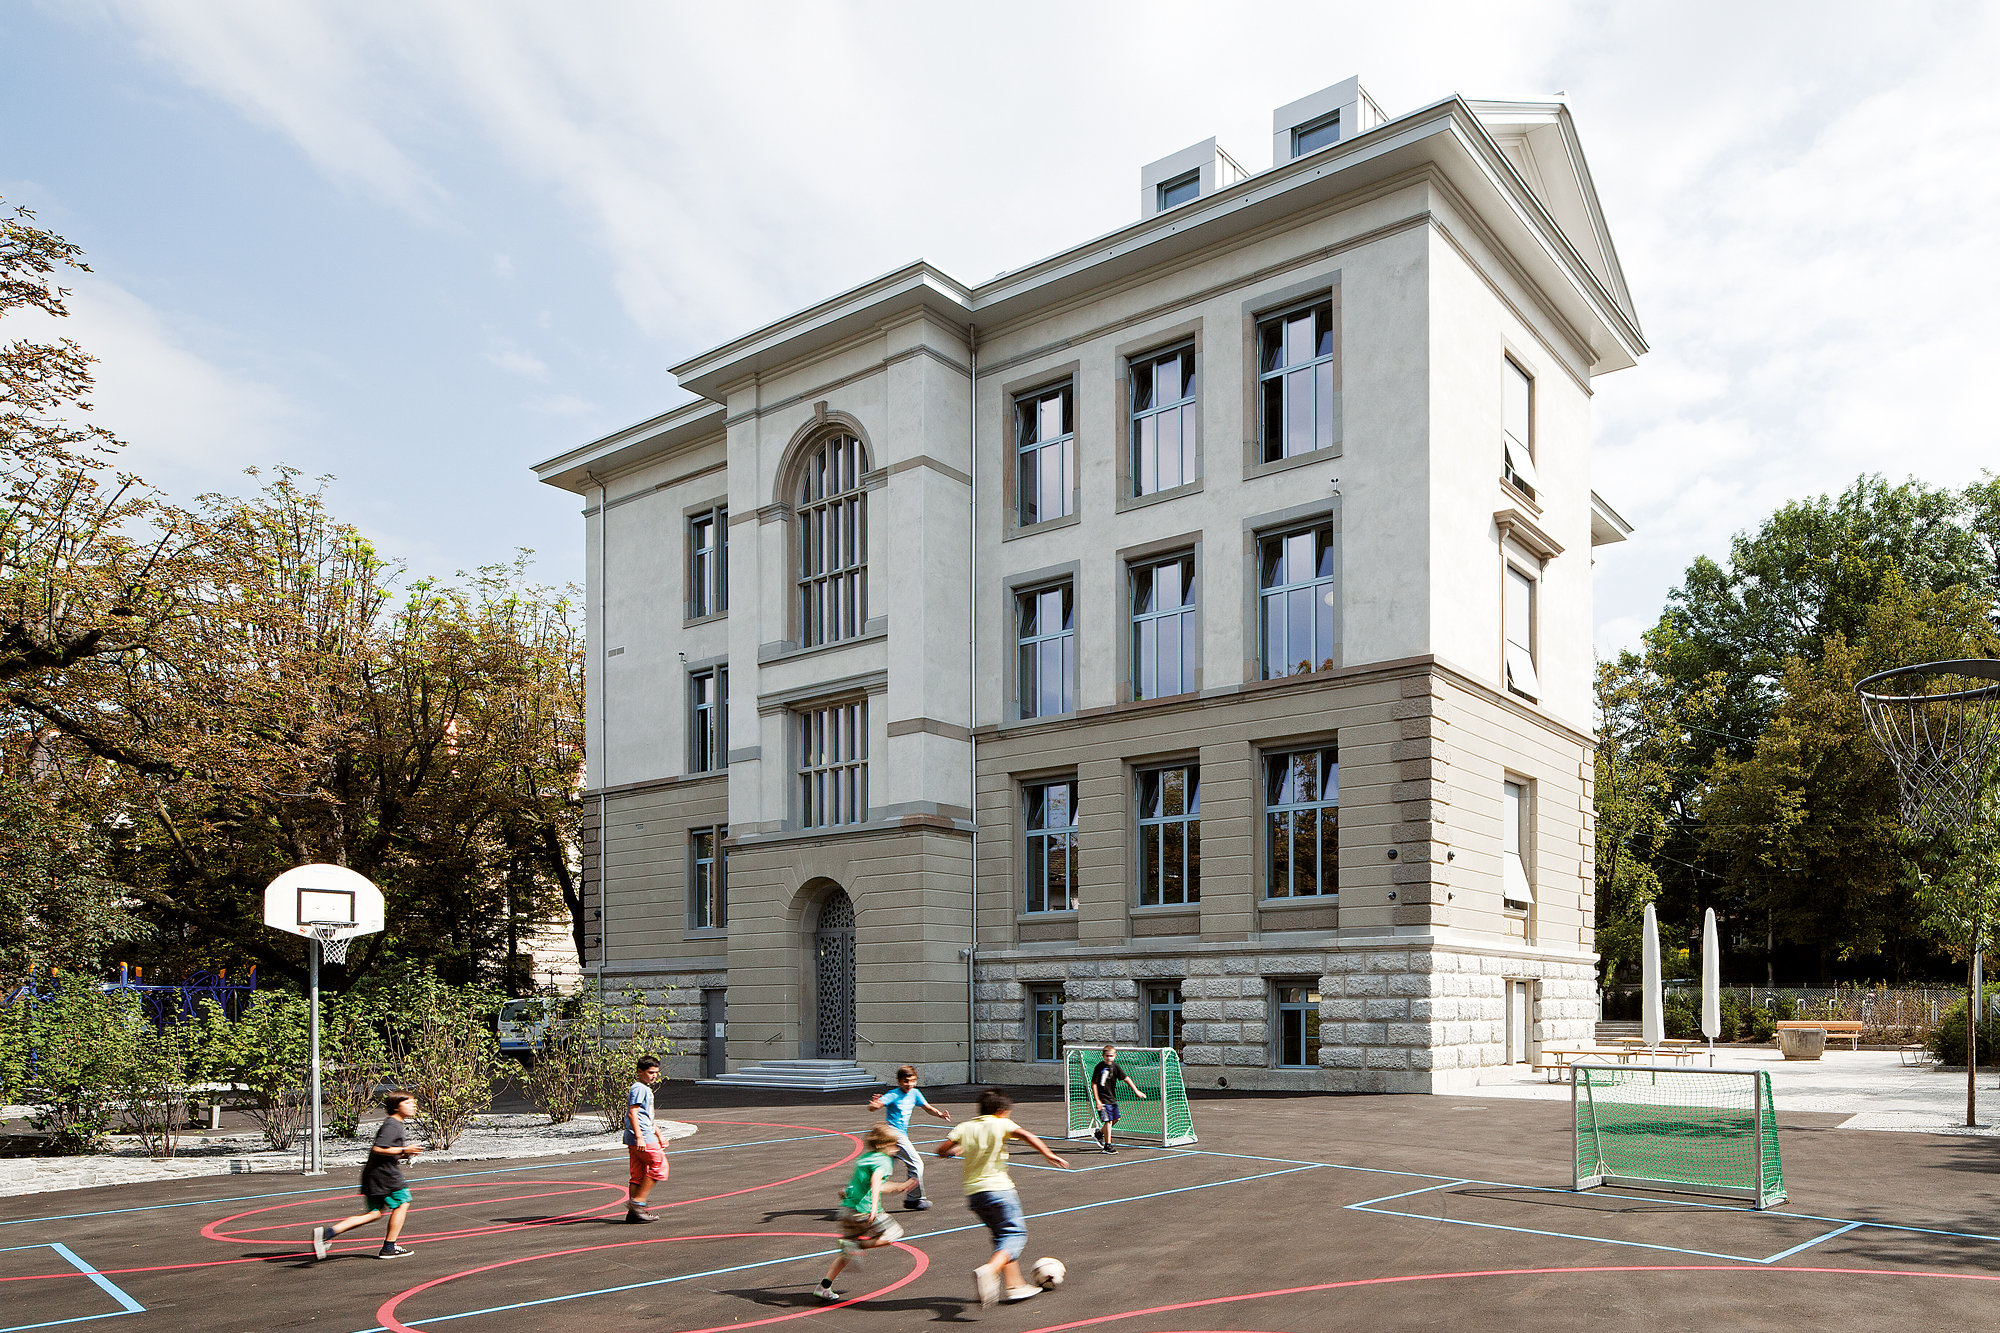 Pausenhof mit Schulhaus Weinberg (© Beat Bühler, Zürich)